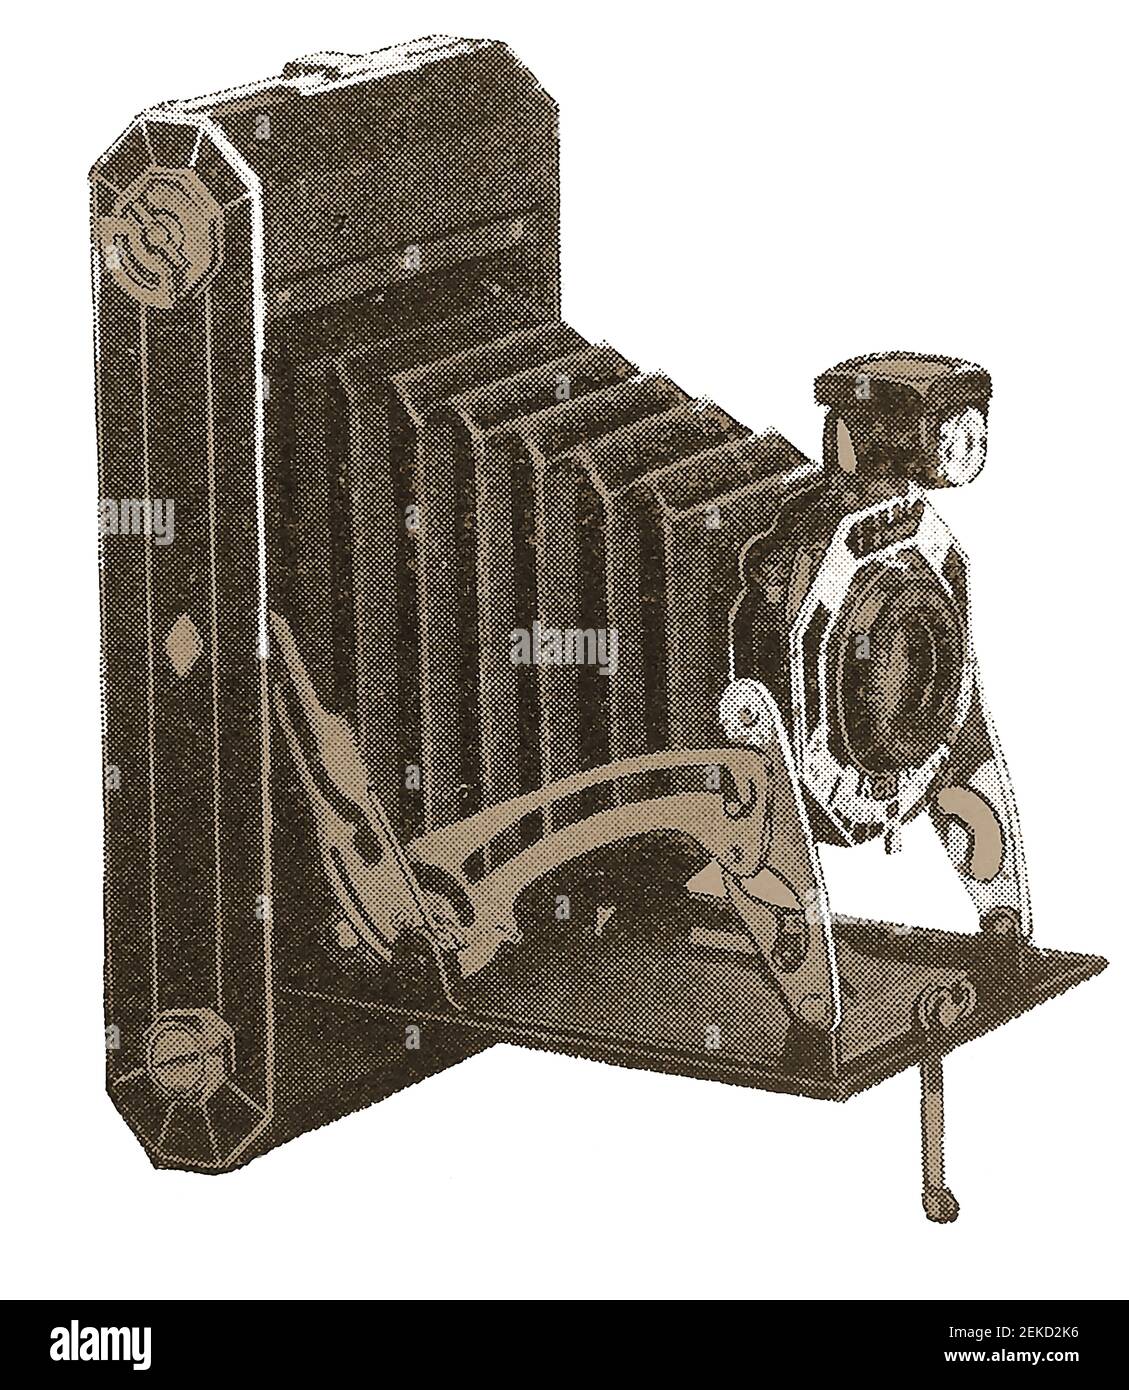 Una típica cámara de película en rollo pequeña Kodak, diseñada para plegarse y transportarla fácilmente. Foto de stock